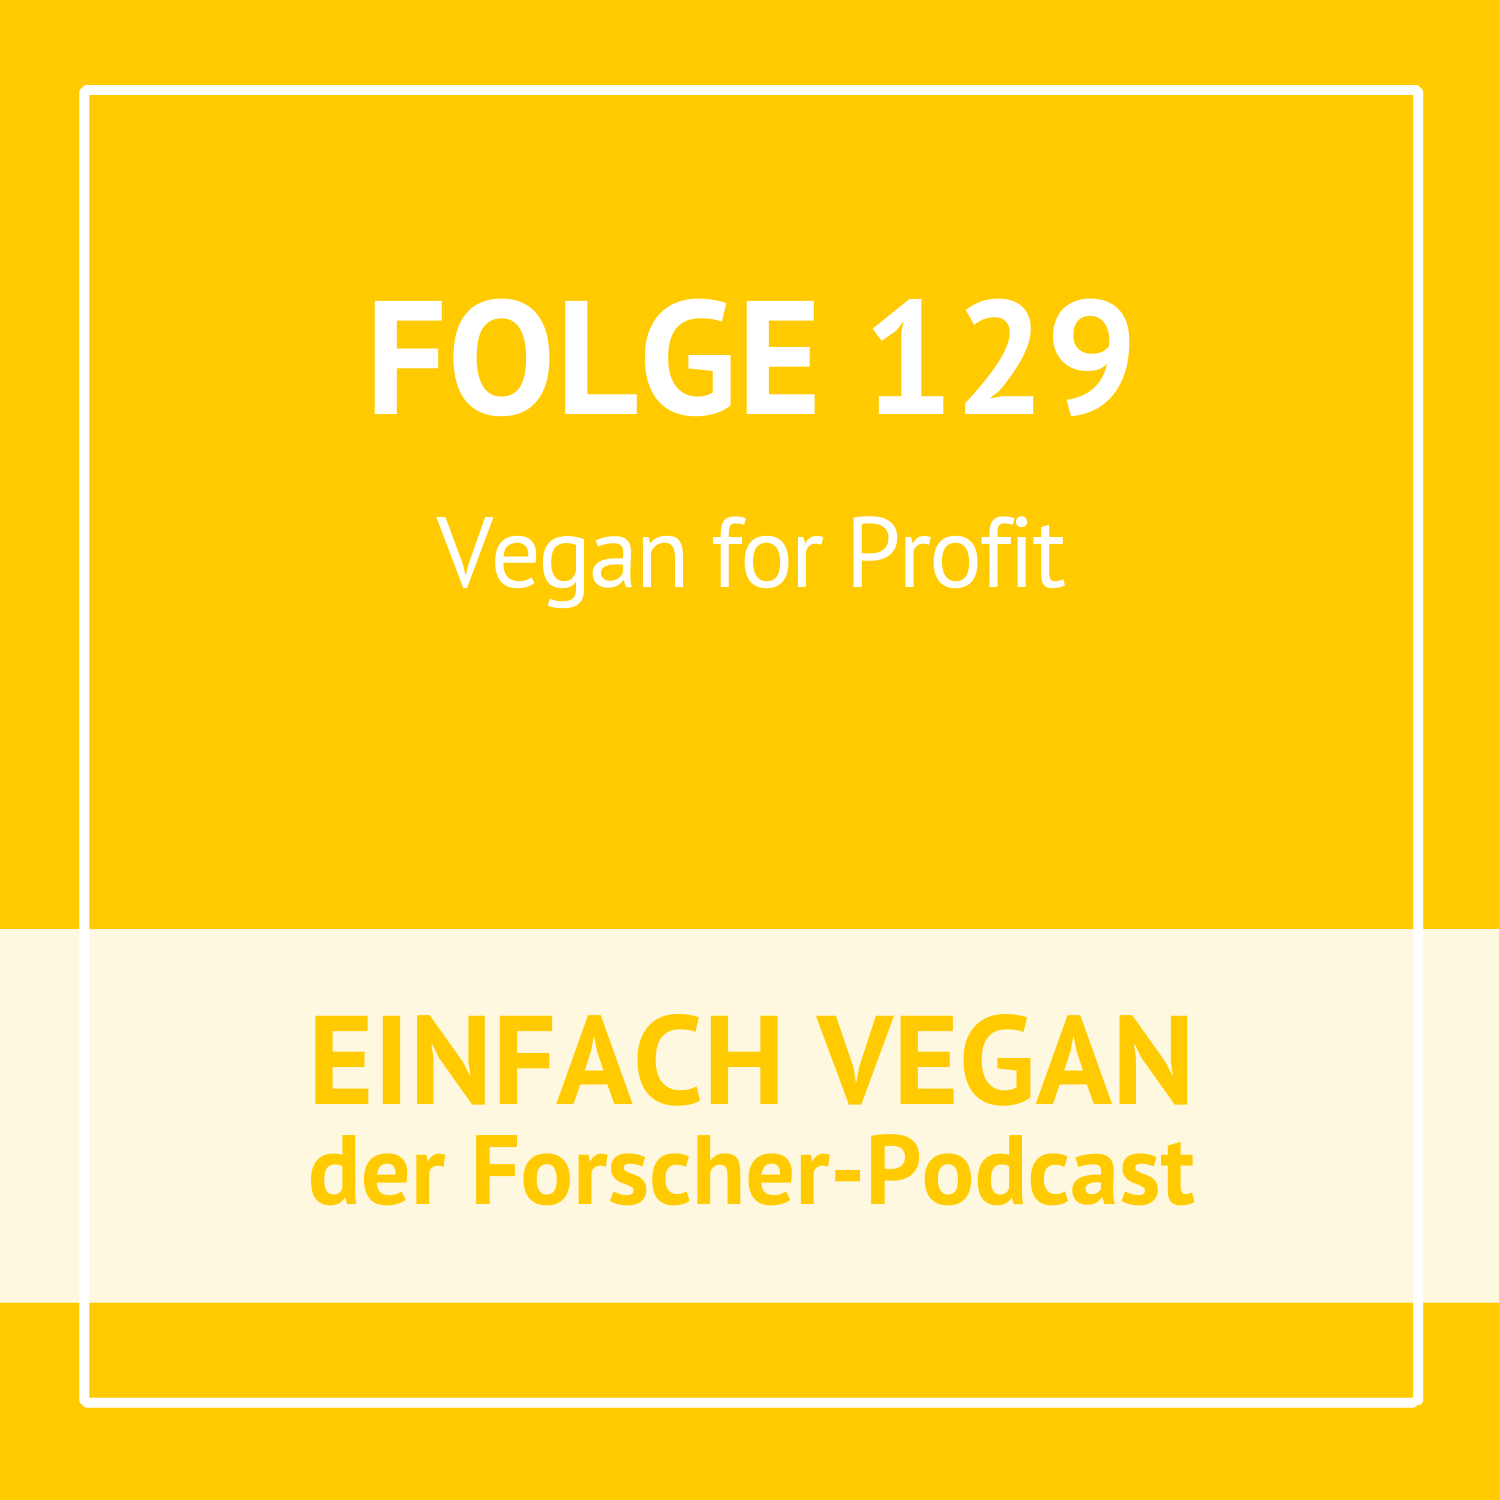 Folge 129 - Vegan for Profit